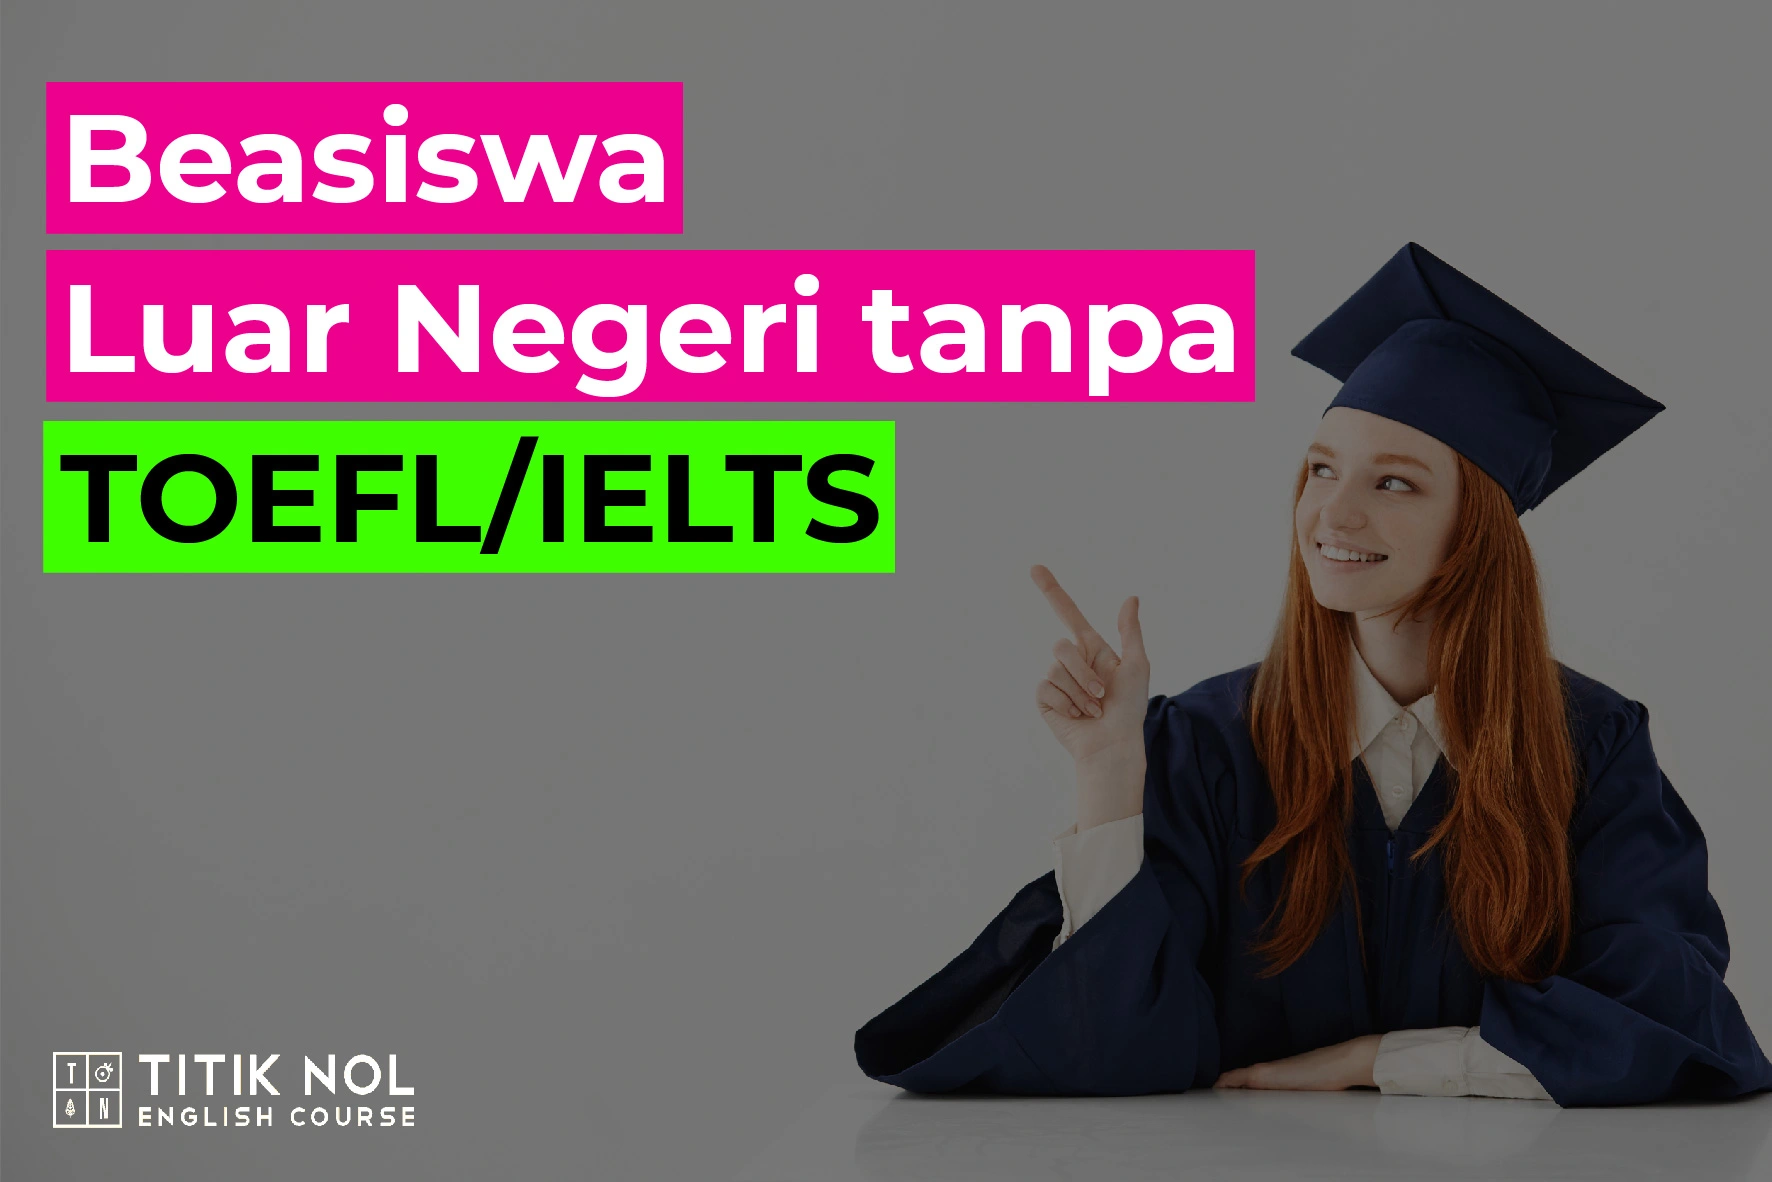 Beasiswa Luar Negeri tanpa TOEFL IELTS 2022